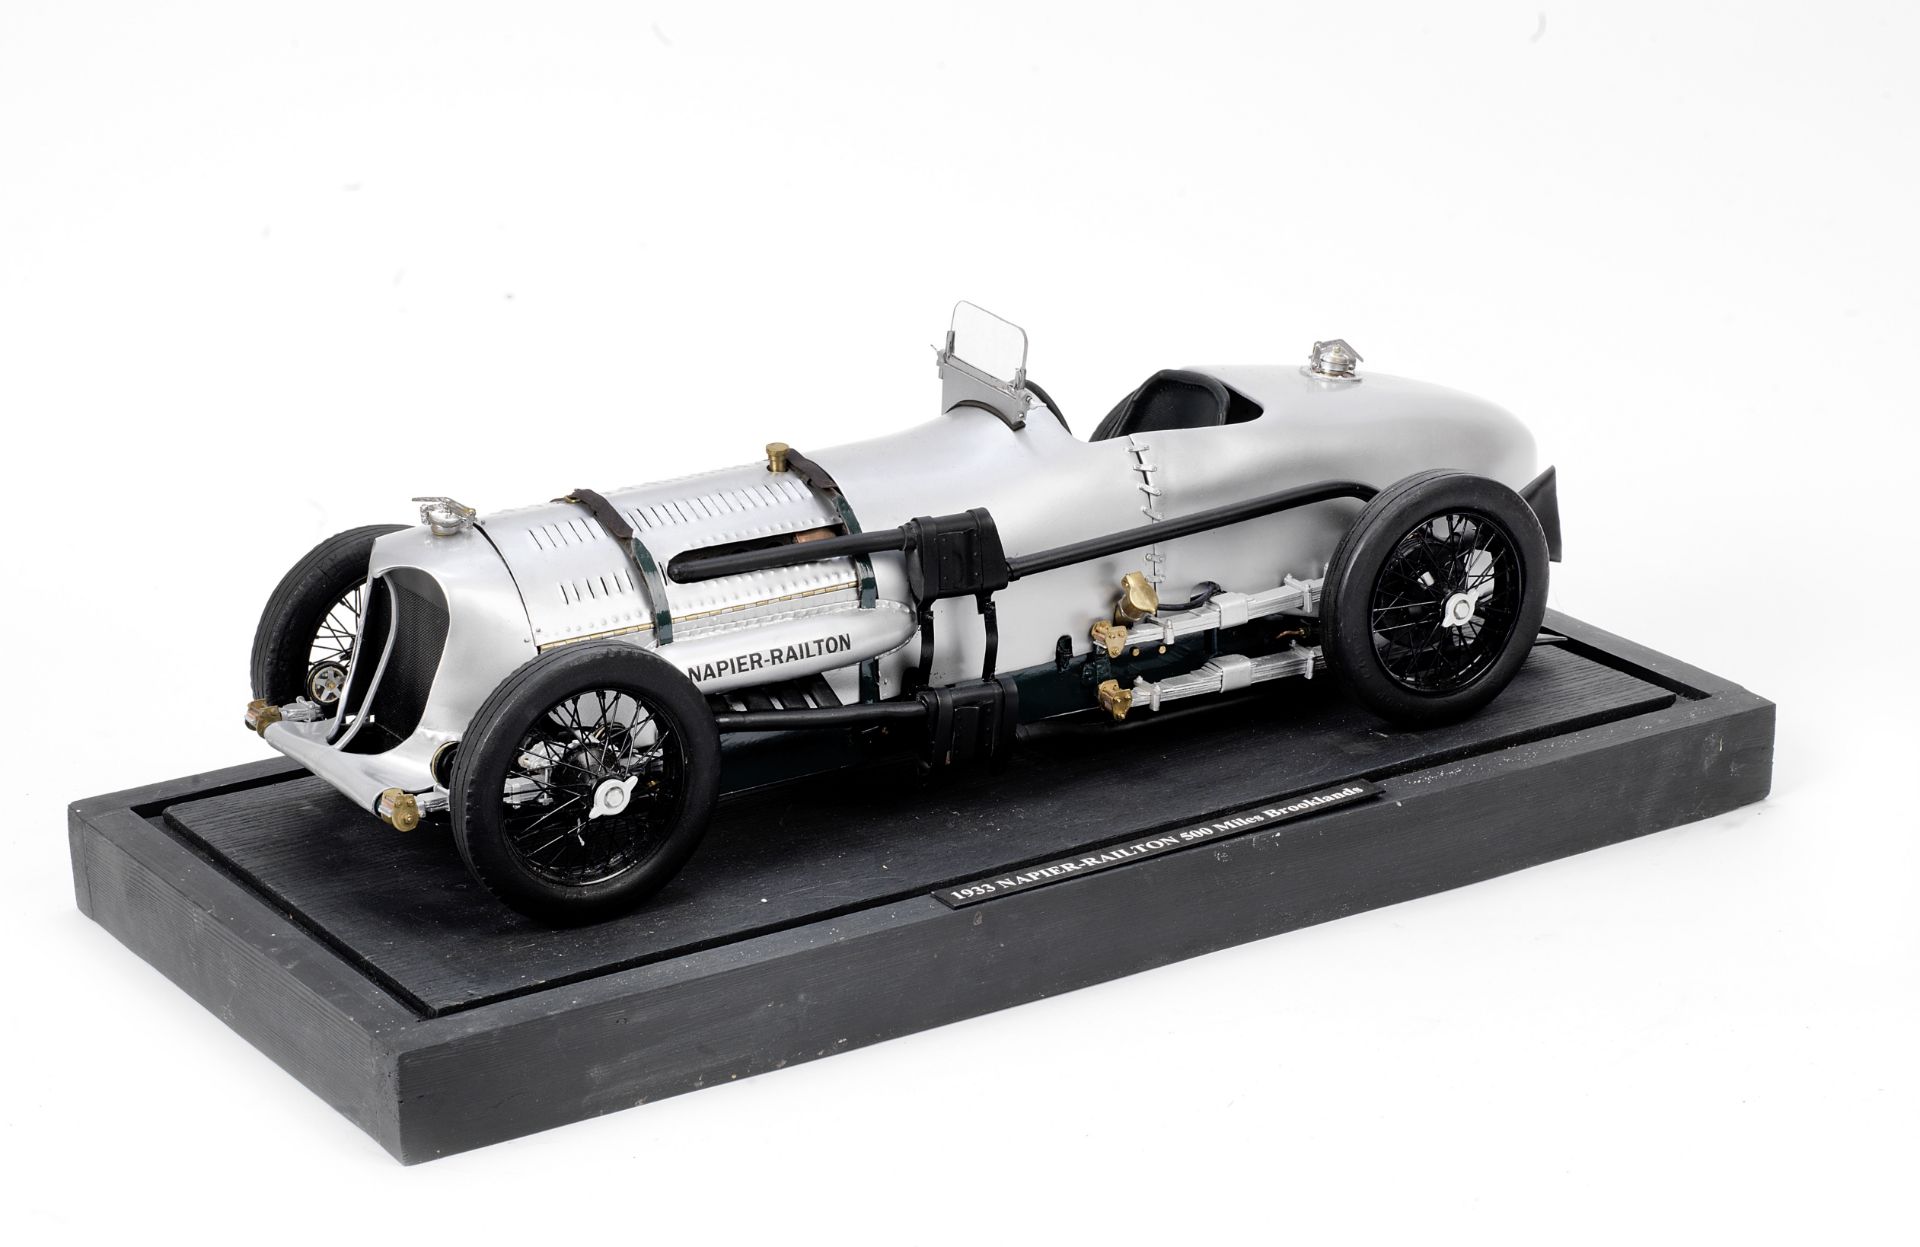 A 1:8 scale scratch-built model of the 1933 Napier-Railton 500 Miles Brooklands Lap Record car,